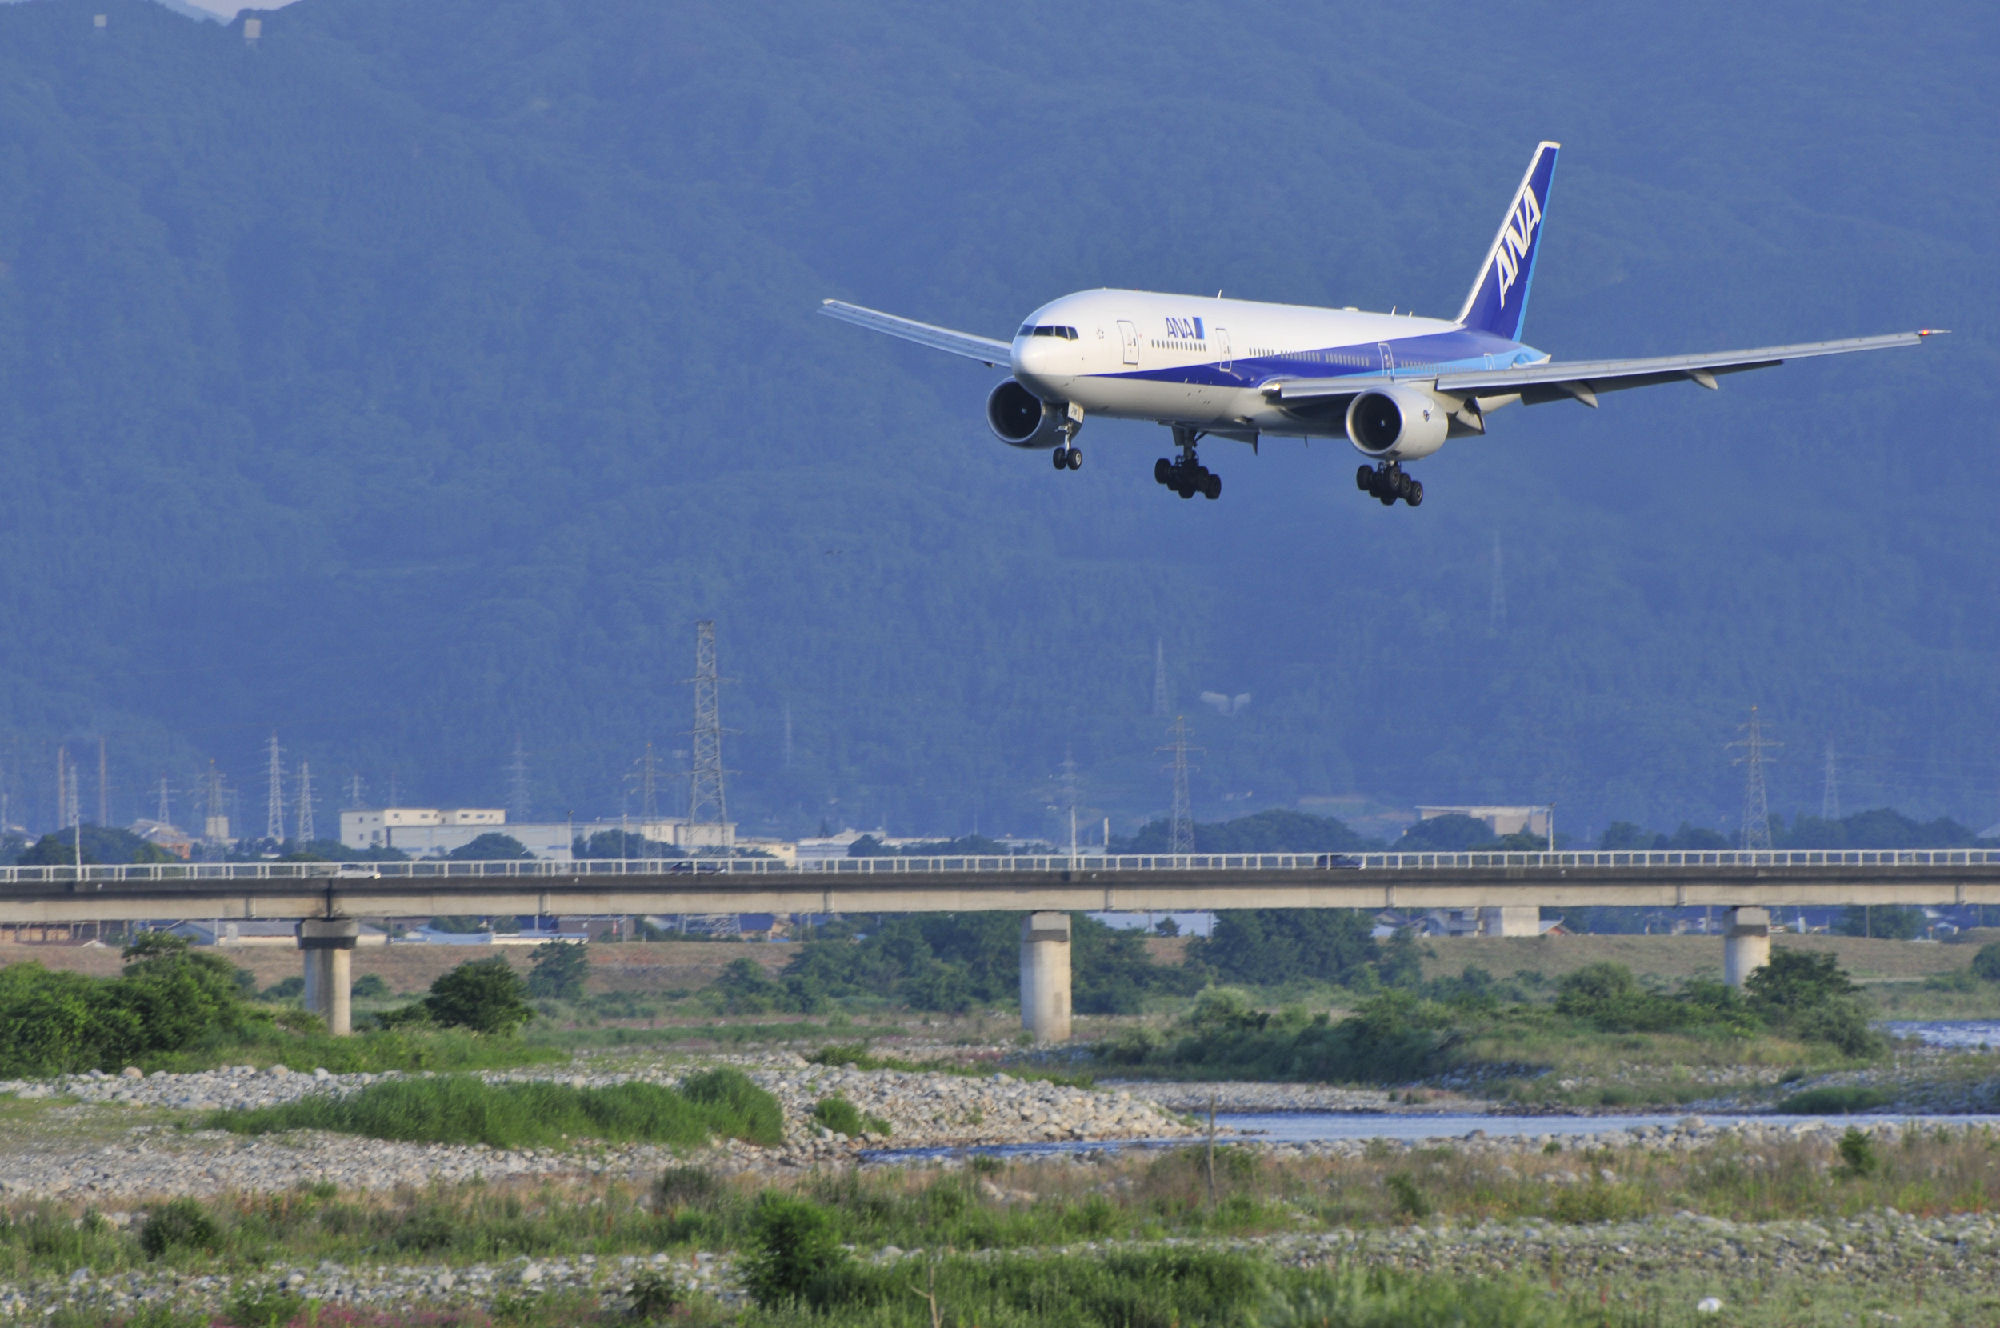 日本富山与大连航班每周增开一个班次 一周三班方便商务与旅游需求